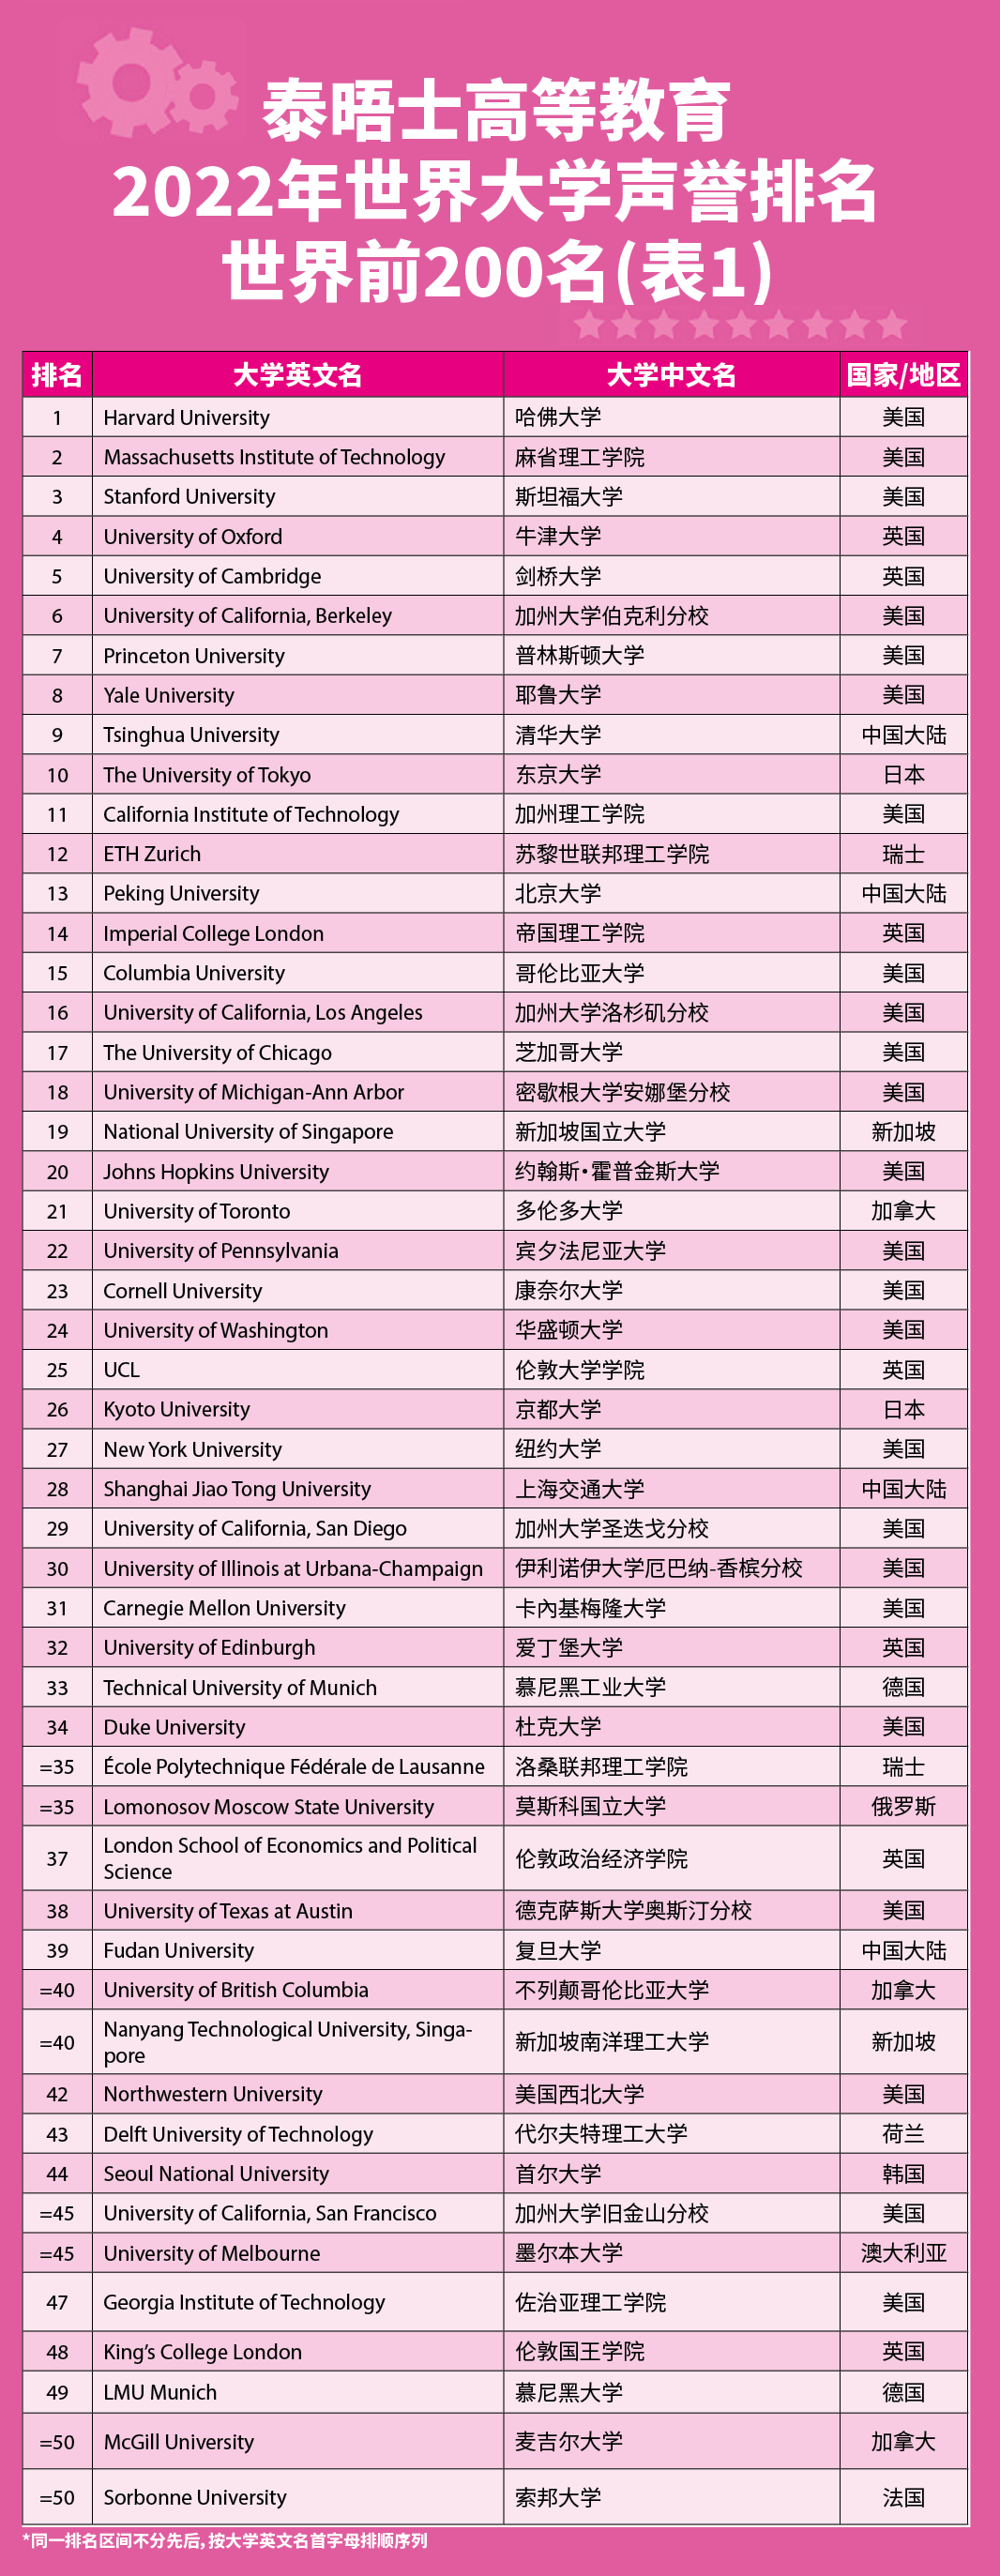 【排名】THE发布2022世界大学声誉排名，哈佛大学连续12年蝉联榜首